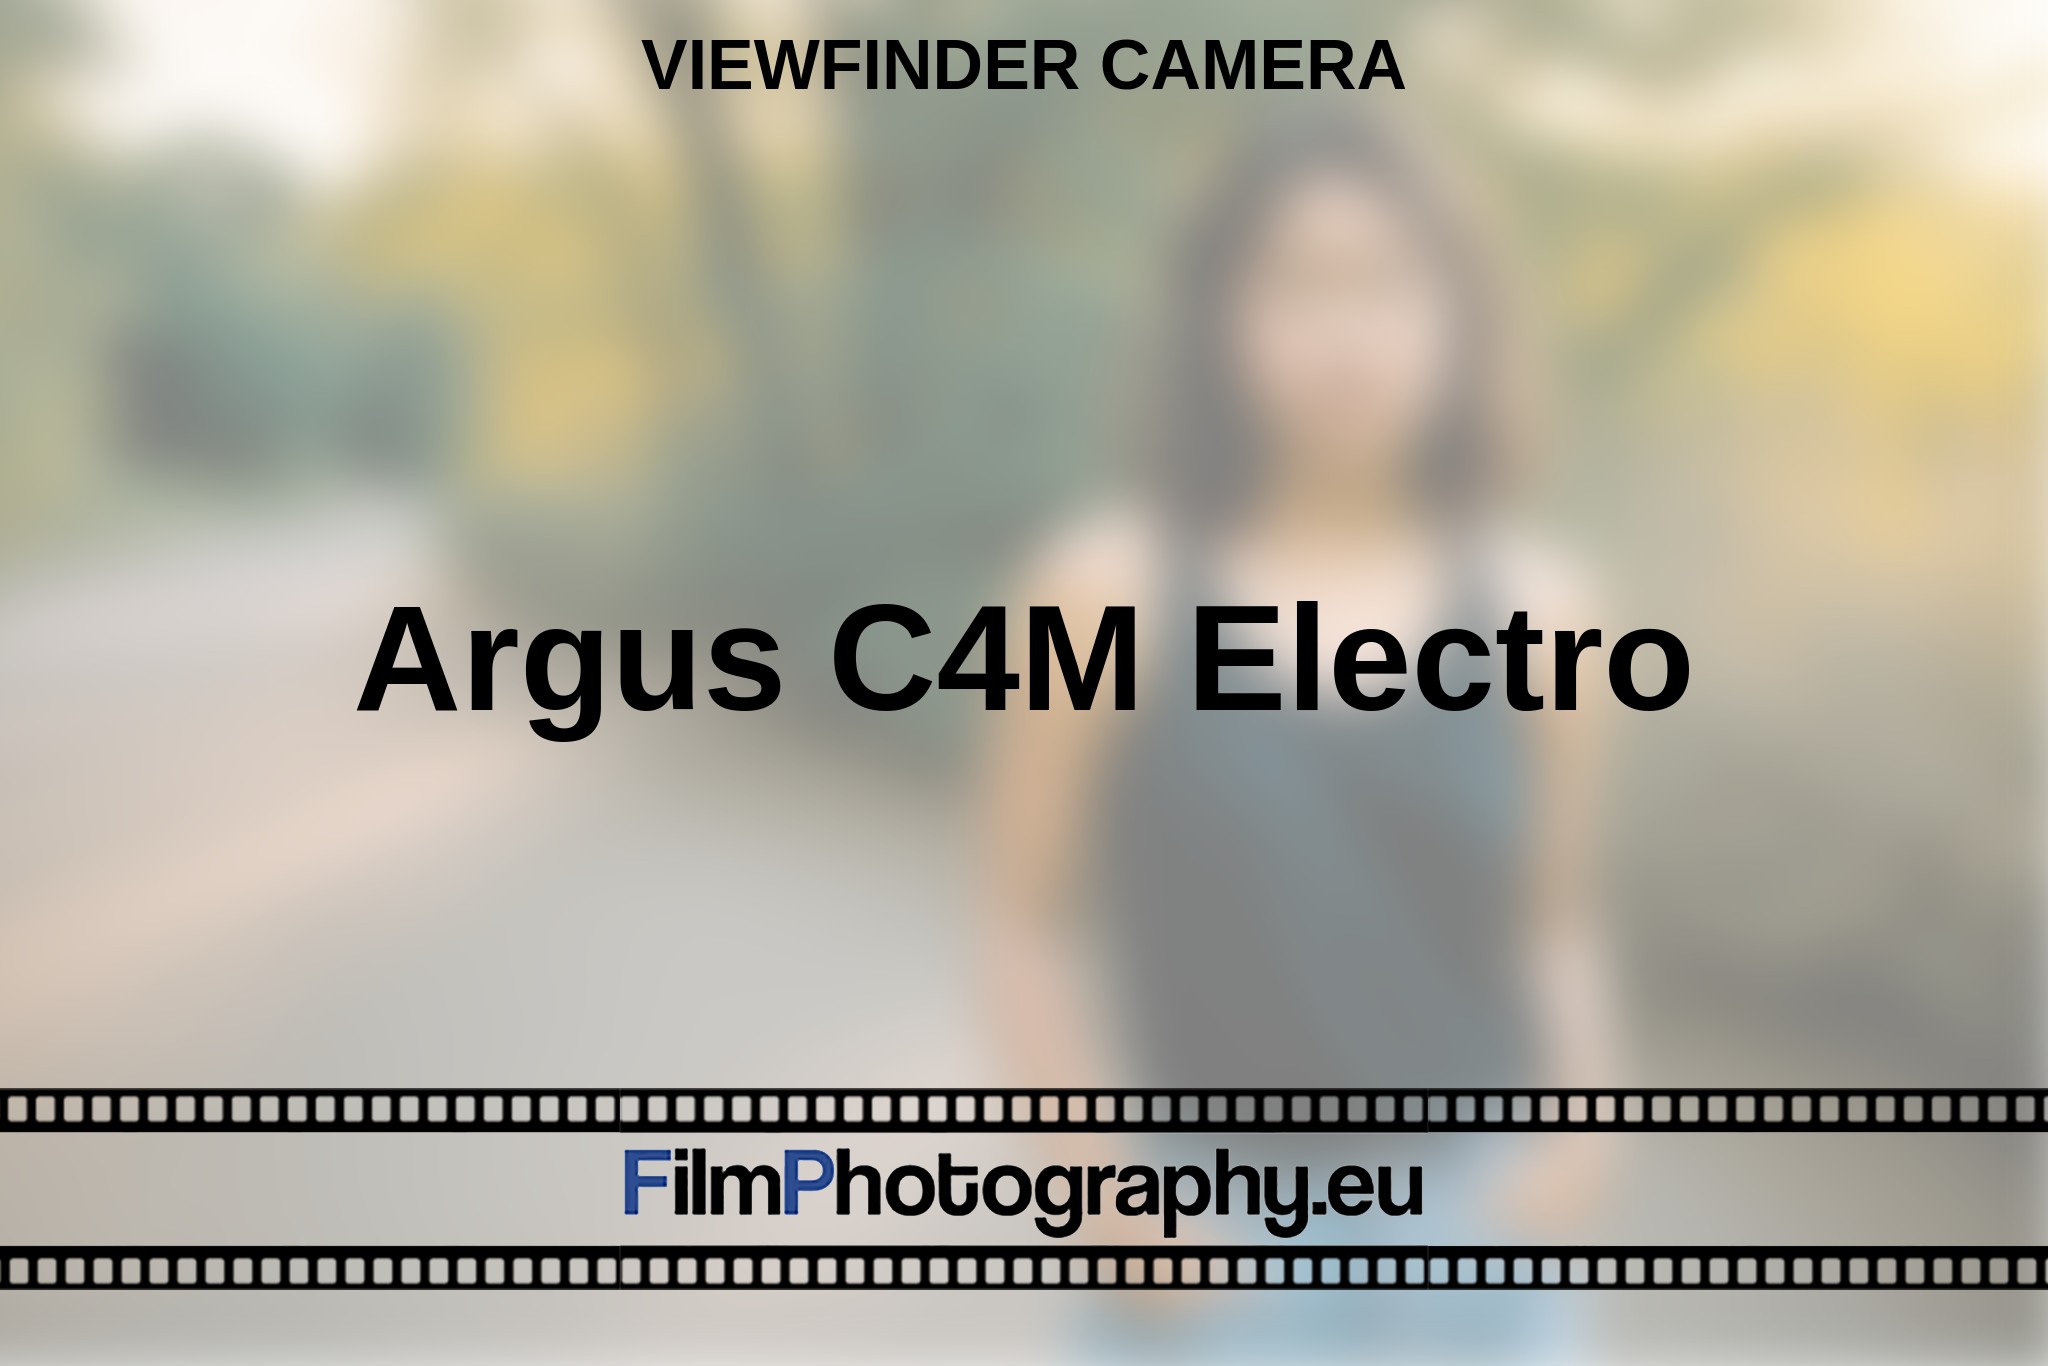 argus-c4m-electro-viewfinder-camera-en-bnv.jpg